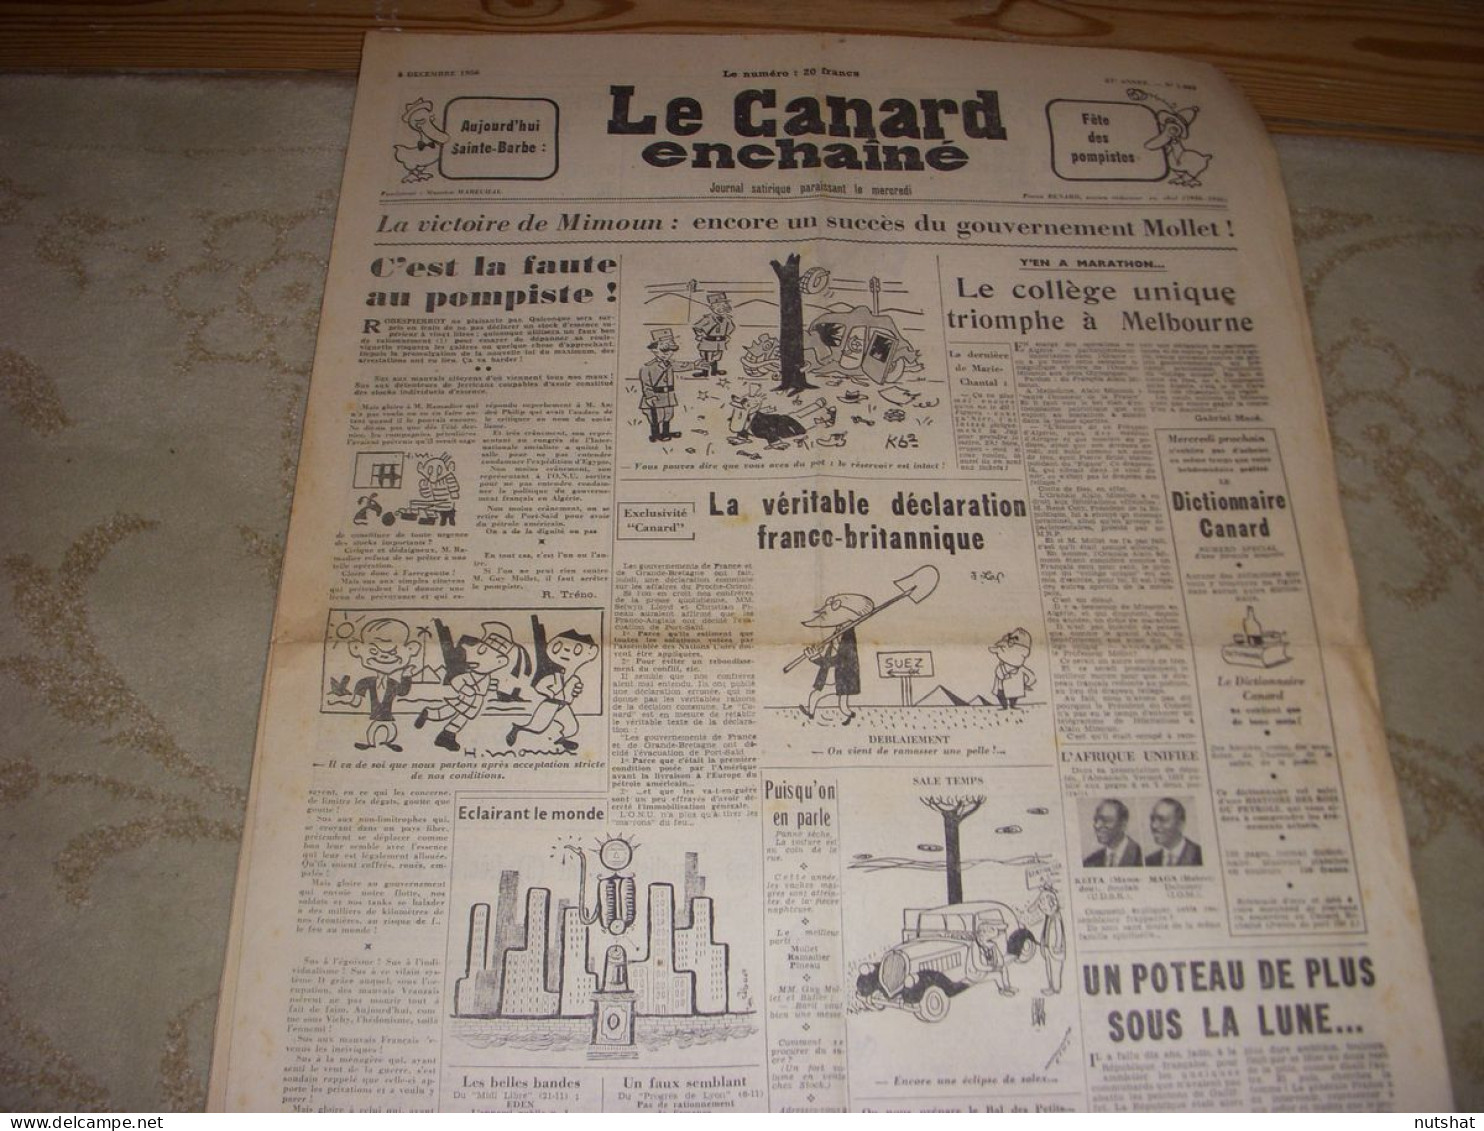 CANARD ENCHAINE 1885 05.12.1956 JO MELBOURNE MIMOUN La CHANSON FRANCAISE - Politique